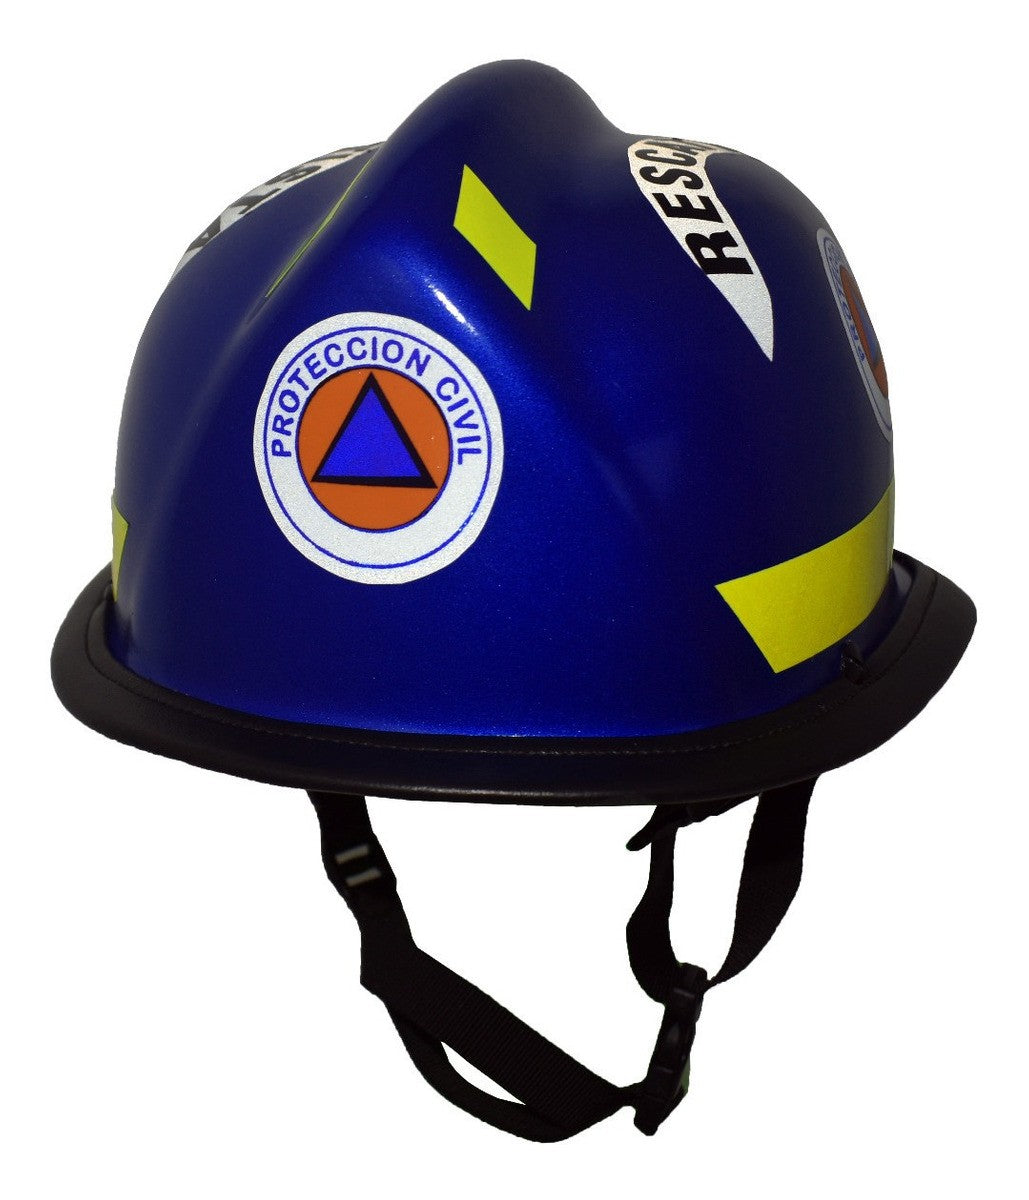 Casco Tipo Bullard Protección Civil Rescatista Rescate